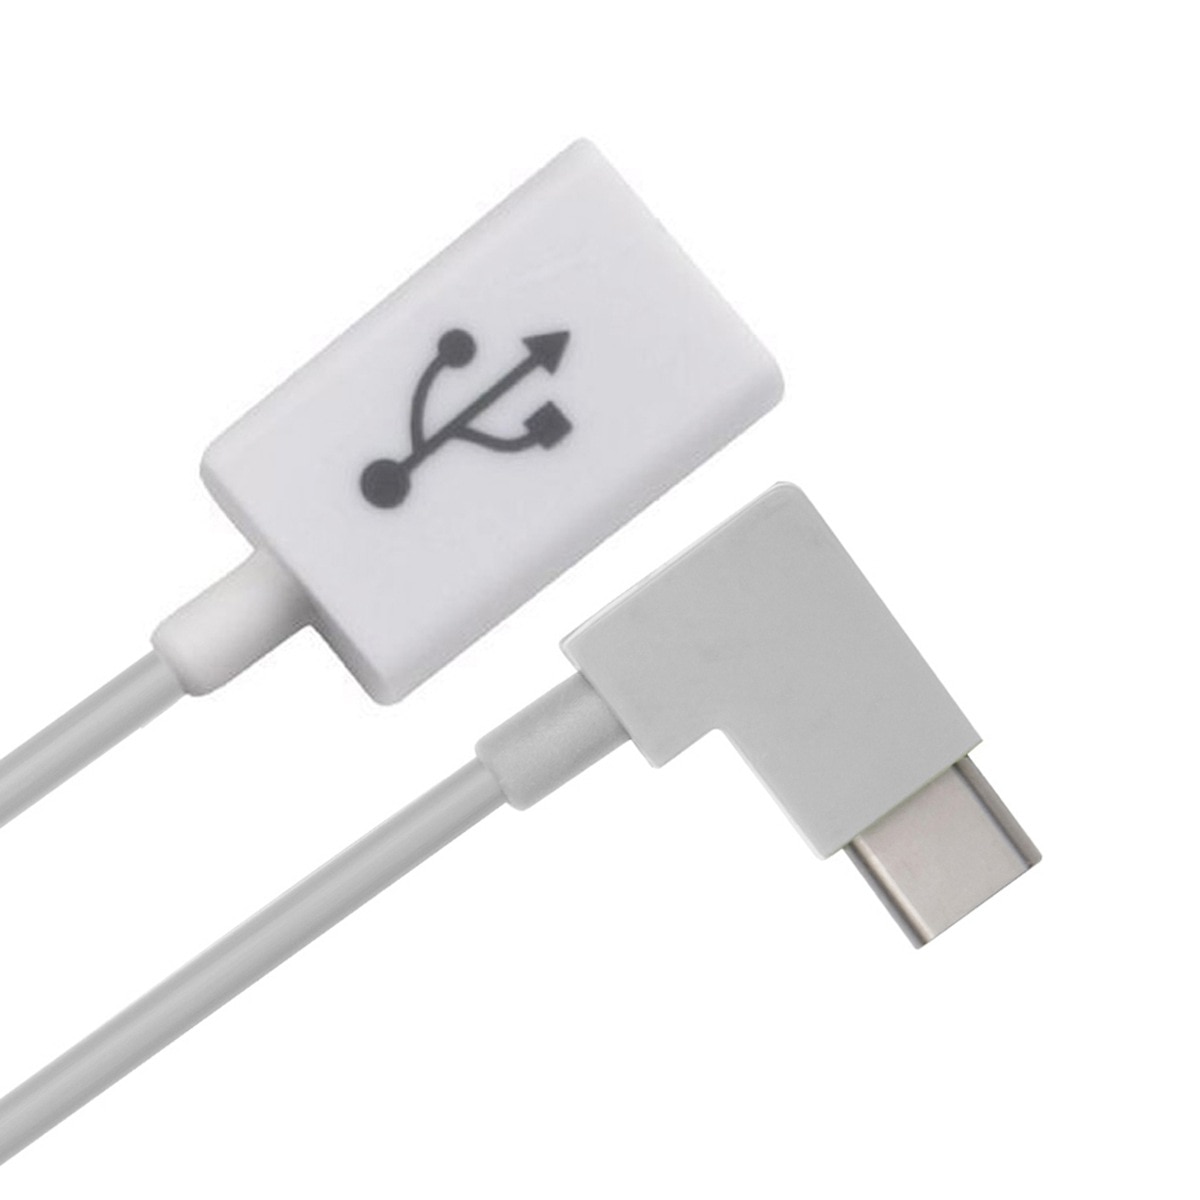 Jimier Cablecc Haaks 90 Graden USB-C Type-C Naar Usb 2.0 Female Otg Kabel Voor Mobiele Telefoon Tablet & Laptop Wit